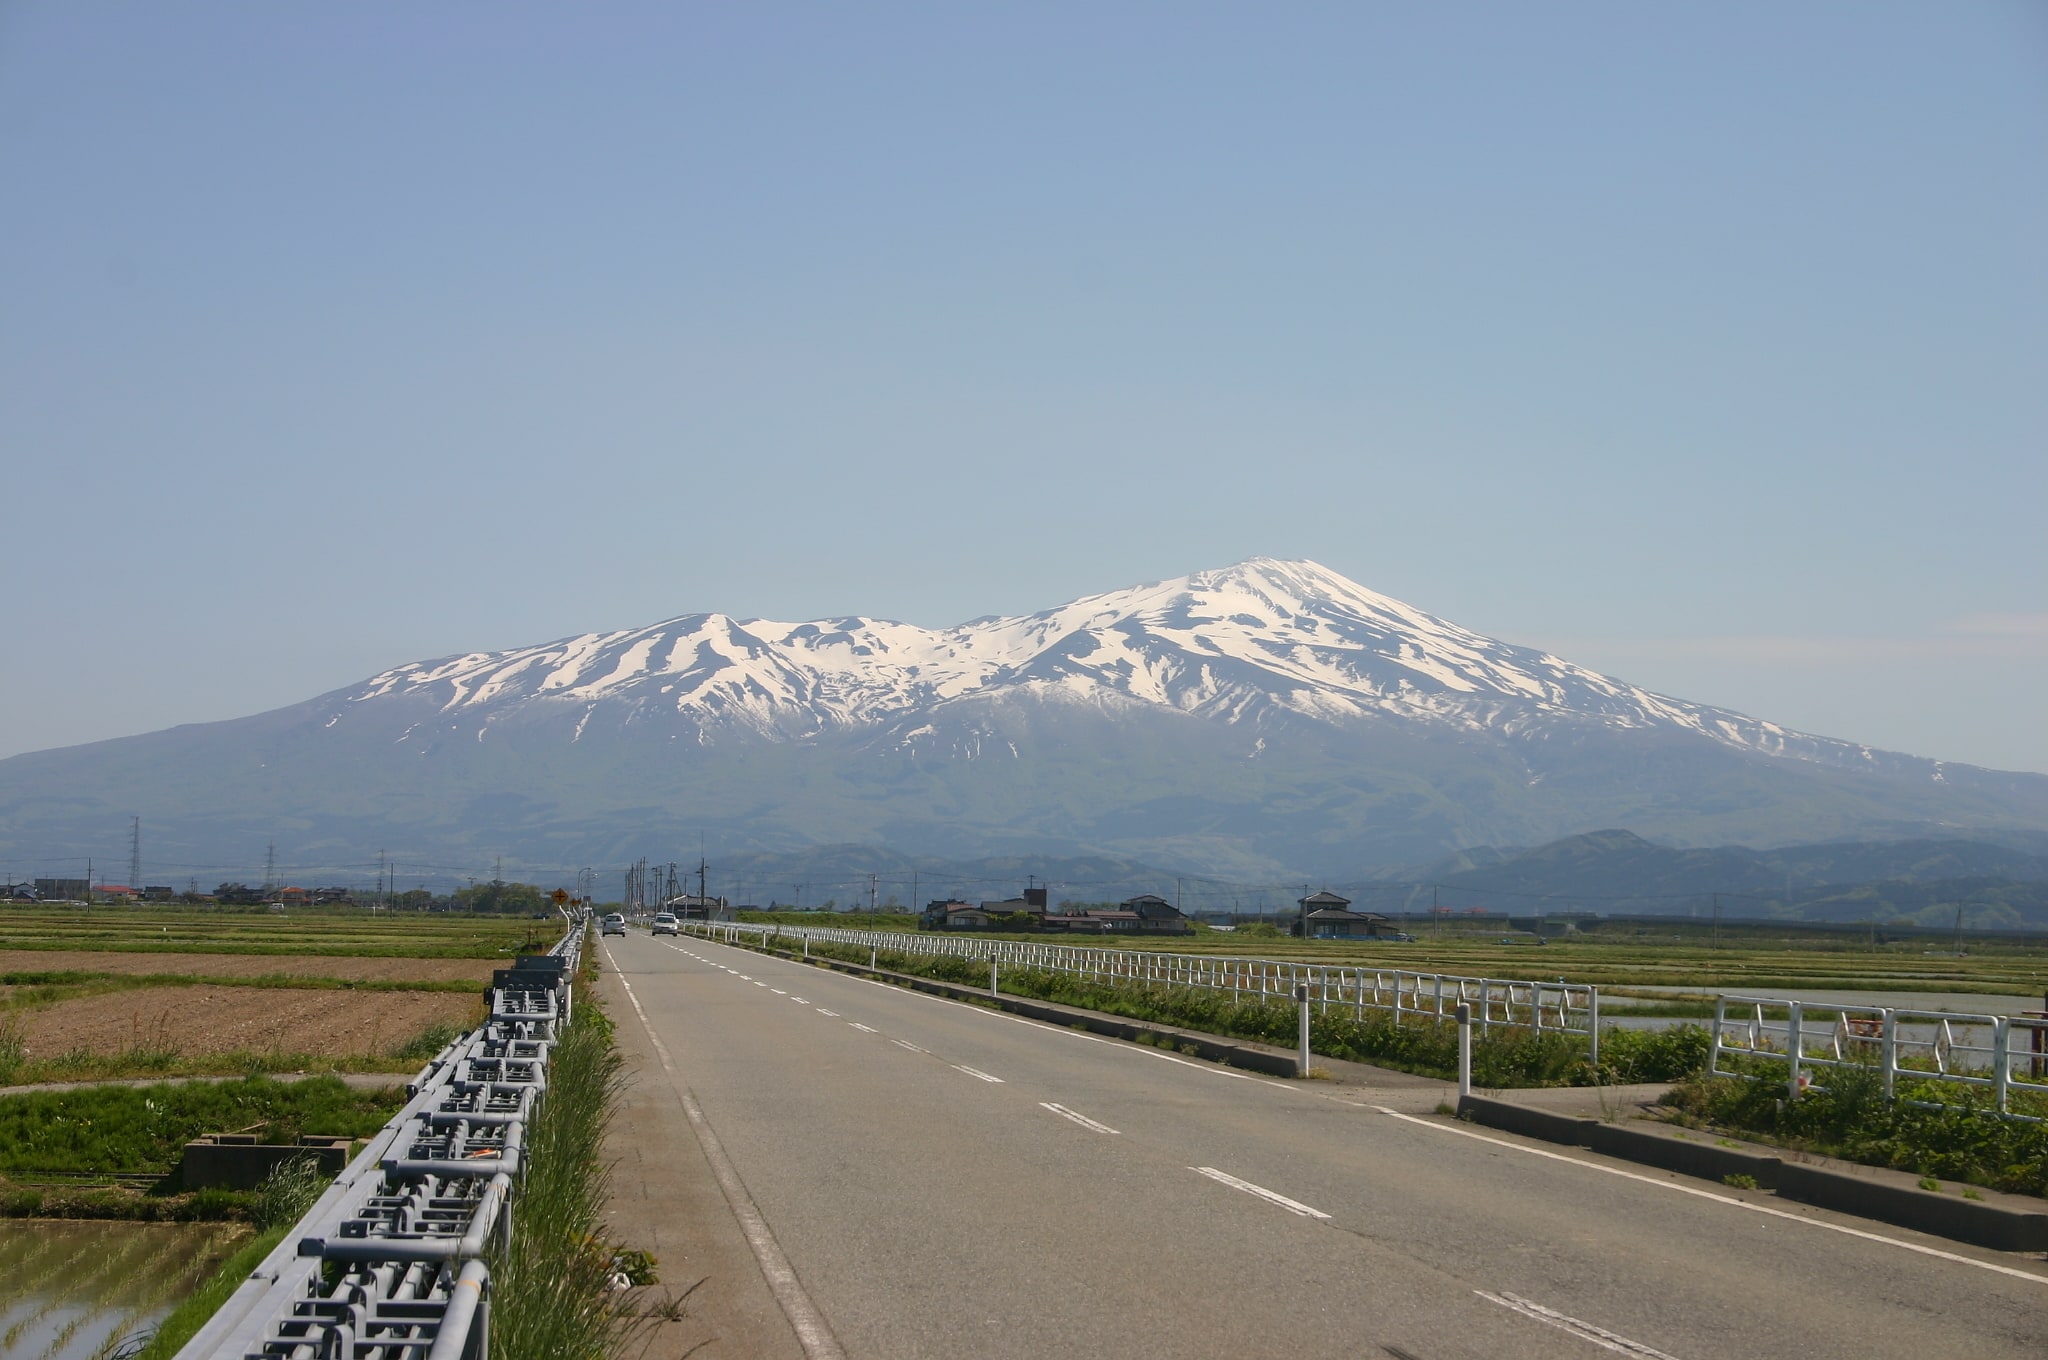 Mt. Chokai, Japan